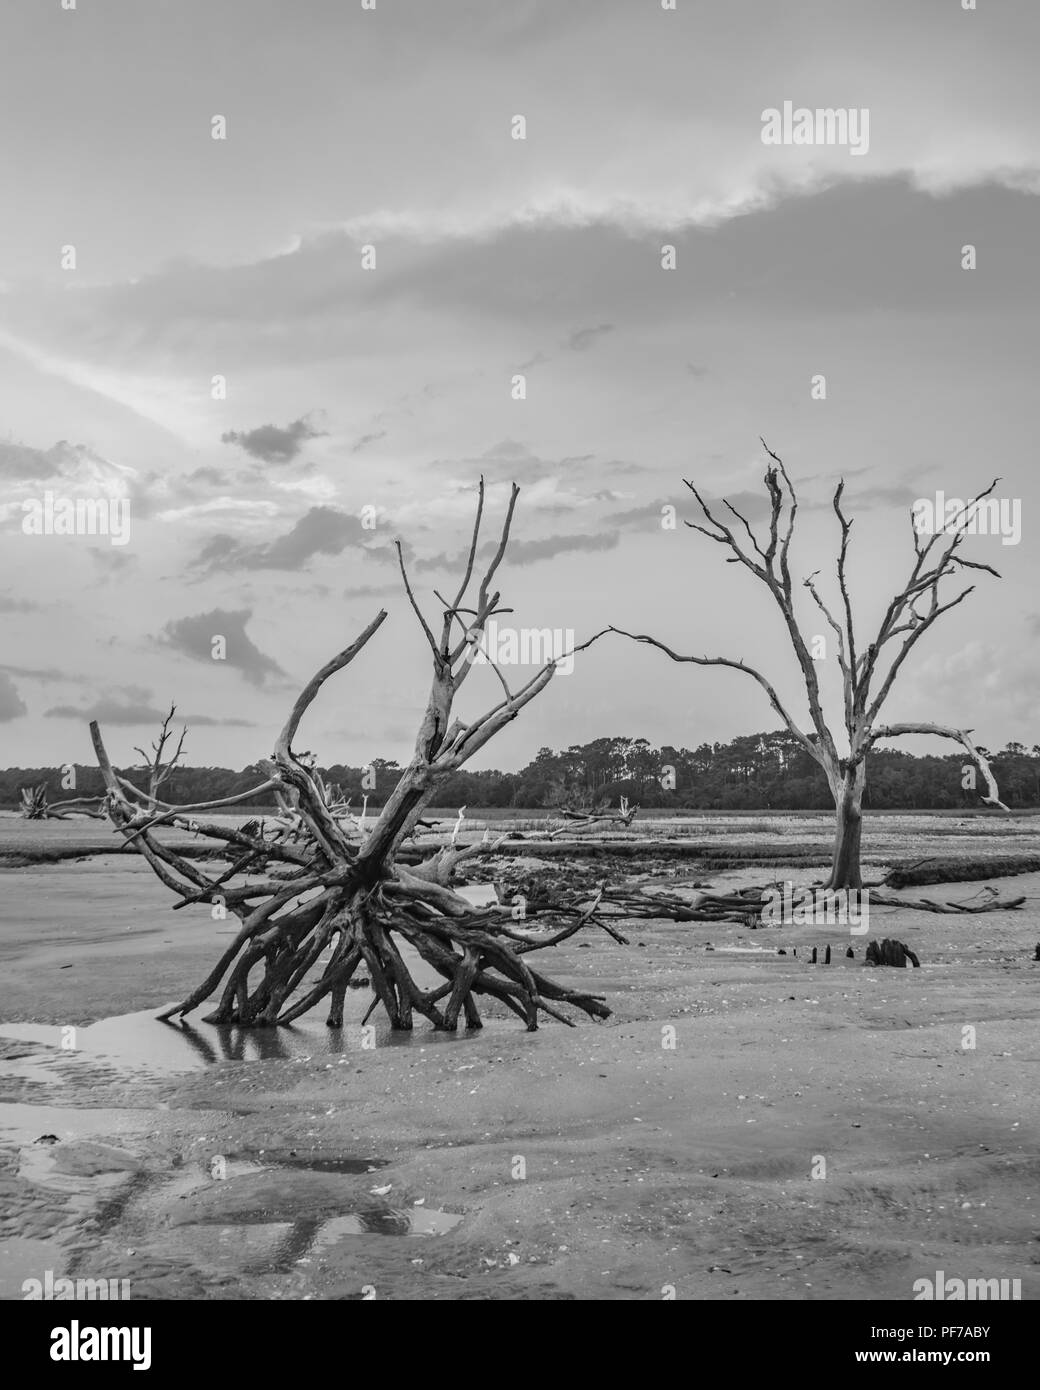 Ecologia: il riscaldamento globale - innalzamento del livello del mare - Spiaggia erosione - e i danni arrecati dall'uragano stanno uccidendo gli alberi di Botany Bay su Edisto Island South Carolina Foto Stock